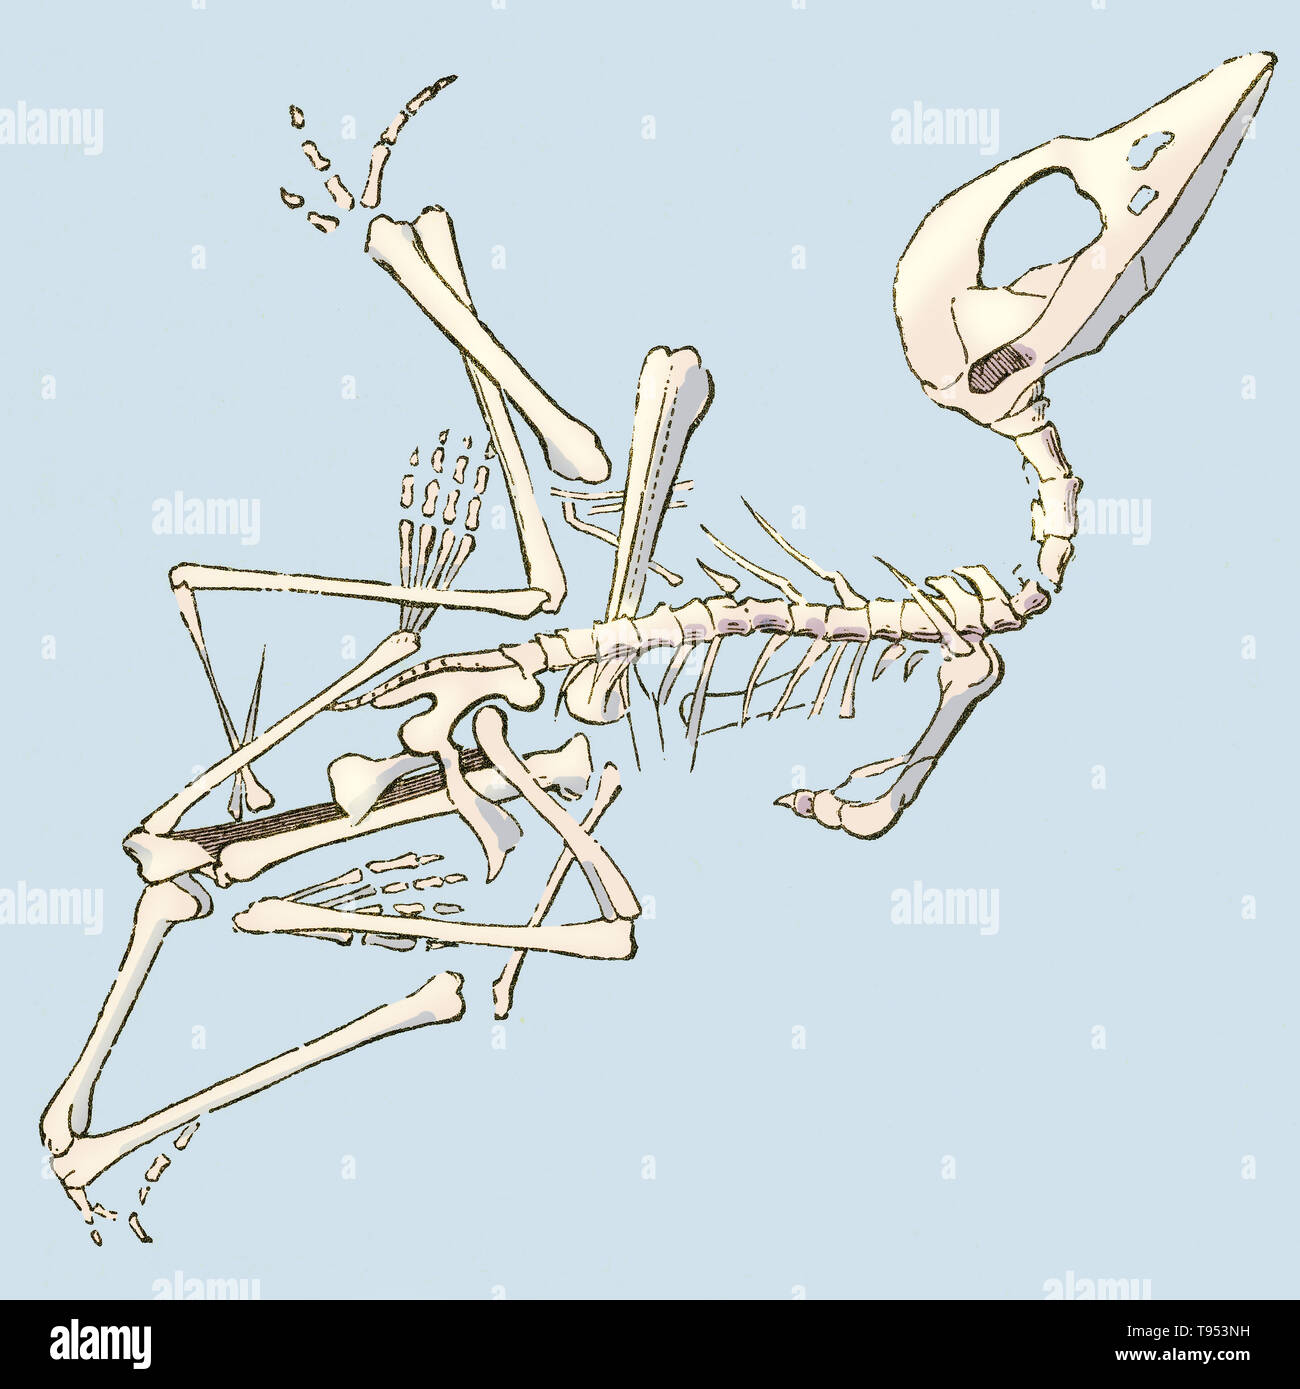 Illustrazione di un fossile pterodactyl (Pterodactylus brevirostris), da Louis Figuier il mondo prima del diluvio, 1867 edizione americana. Figuier descrive pterodactyls come ''a metà vampiro, semi-woodcock, coccodrillo con i denti.'' Questo fossile è stato scoperto in Germania di Solenhofen calcari. Foto Stock